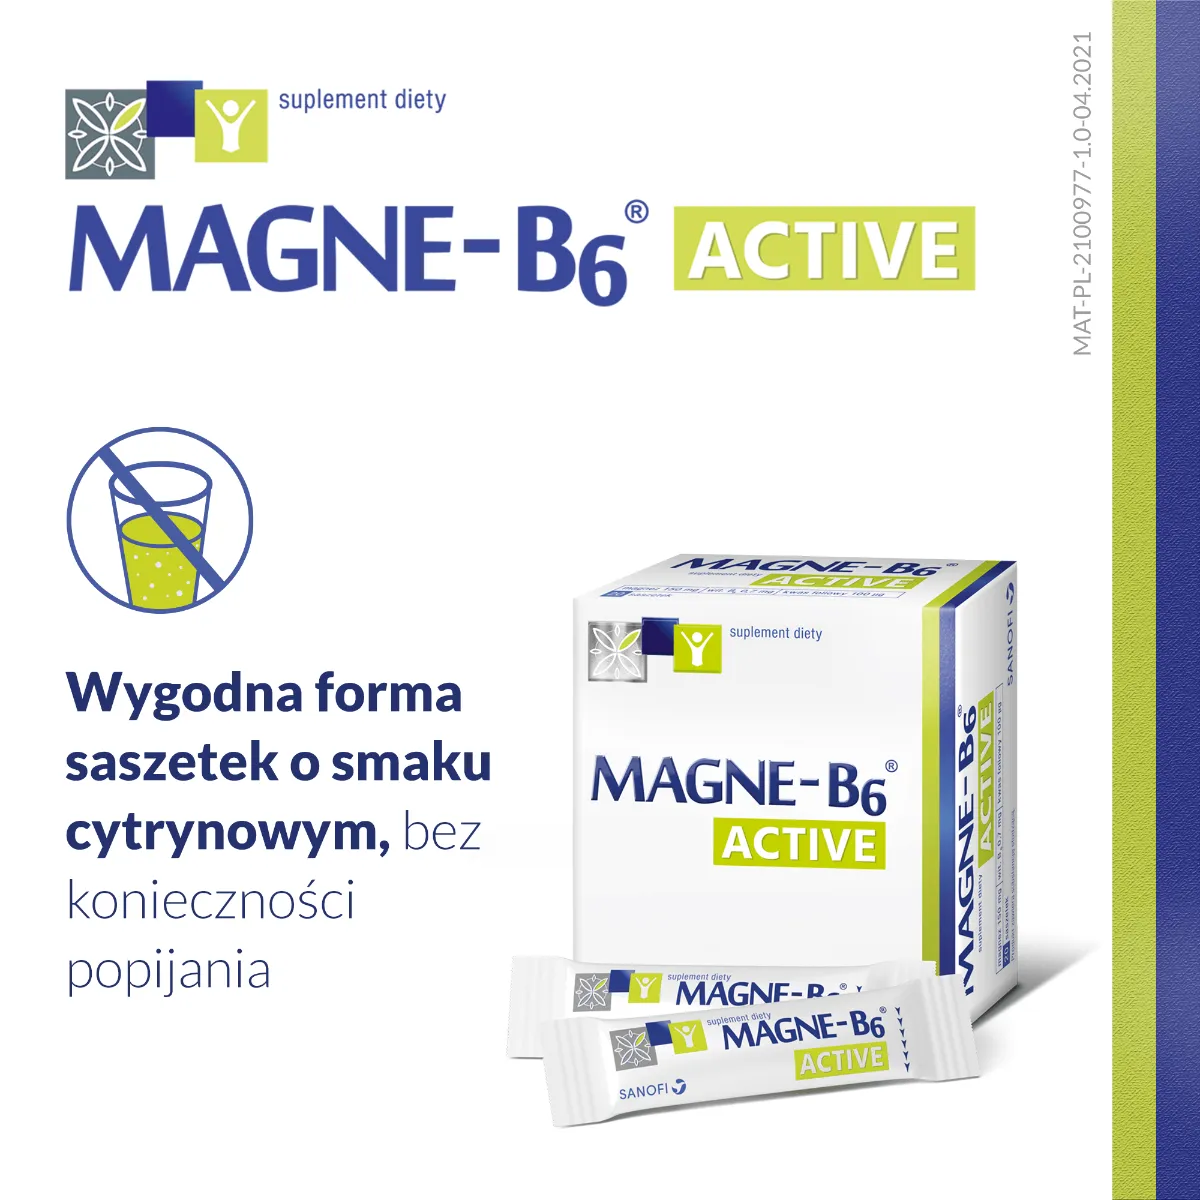 Magne B6 Active, suplement diety, 20 saszetek 